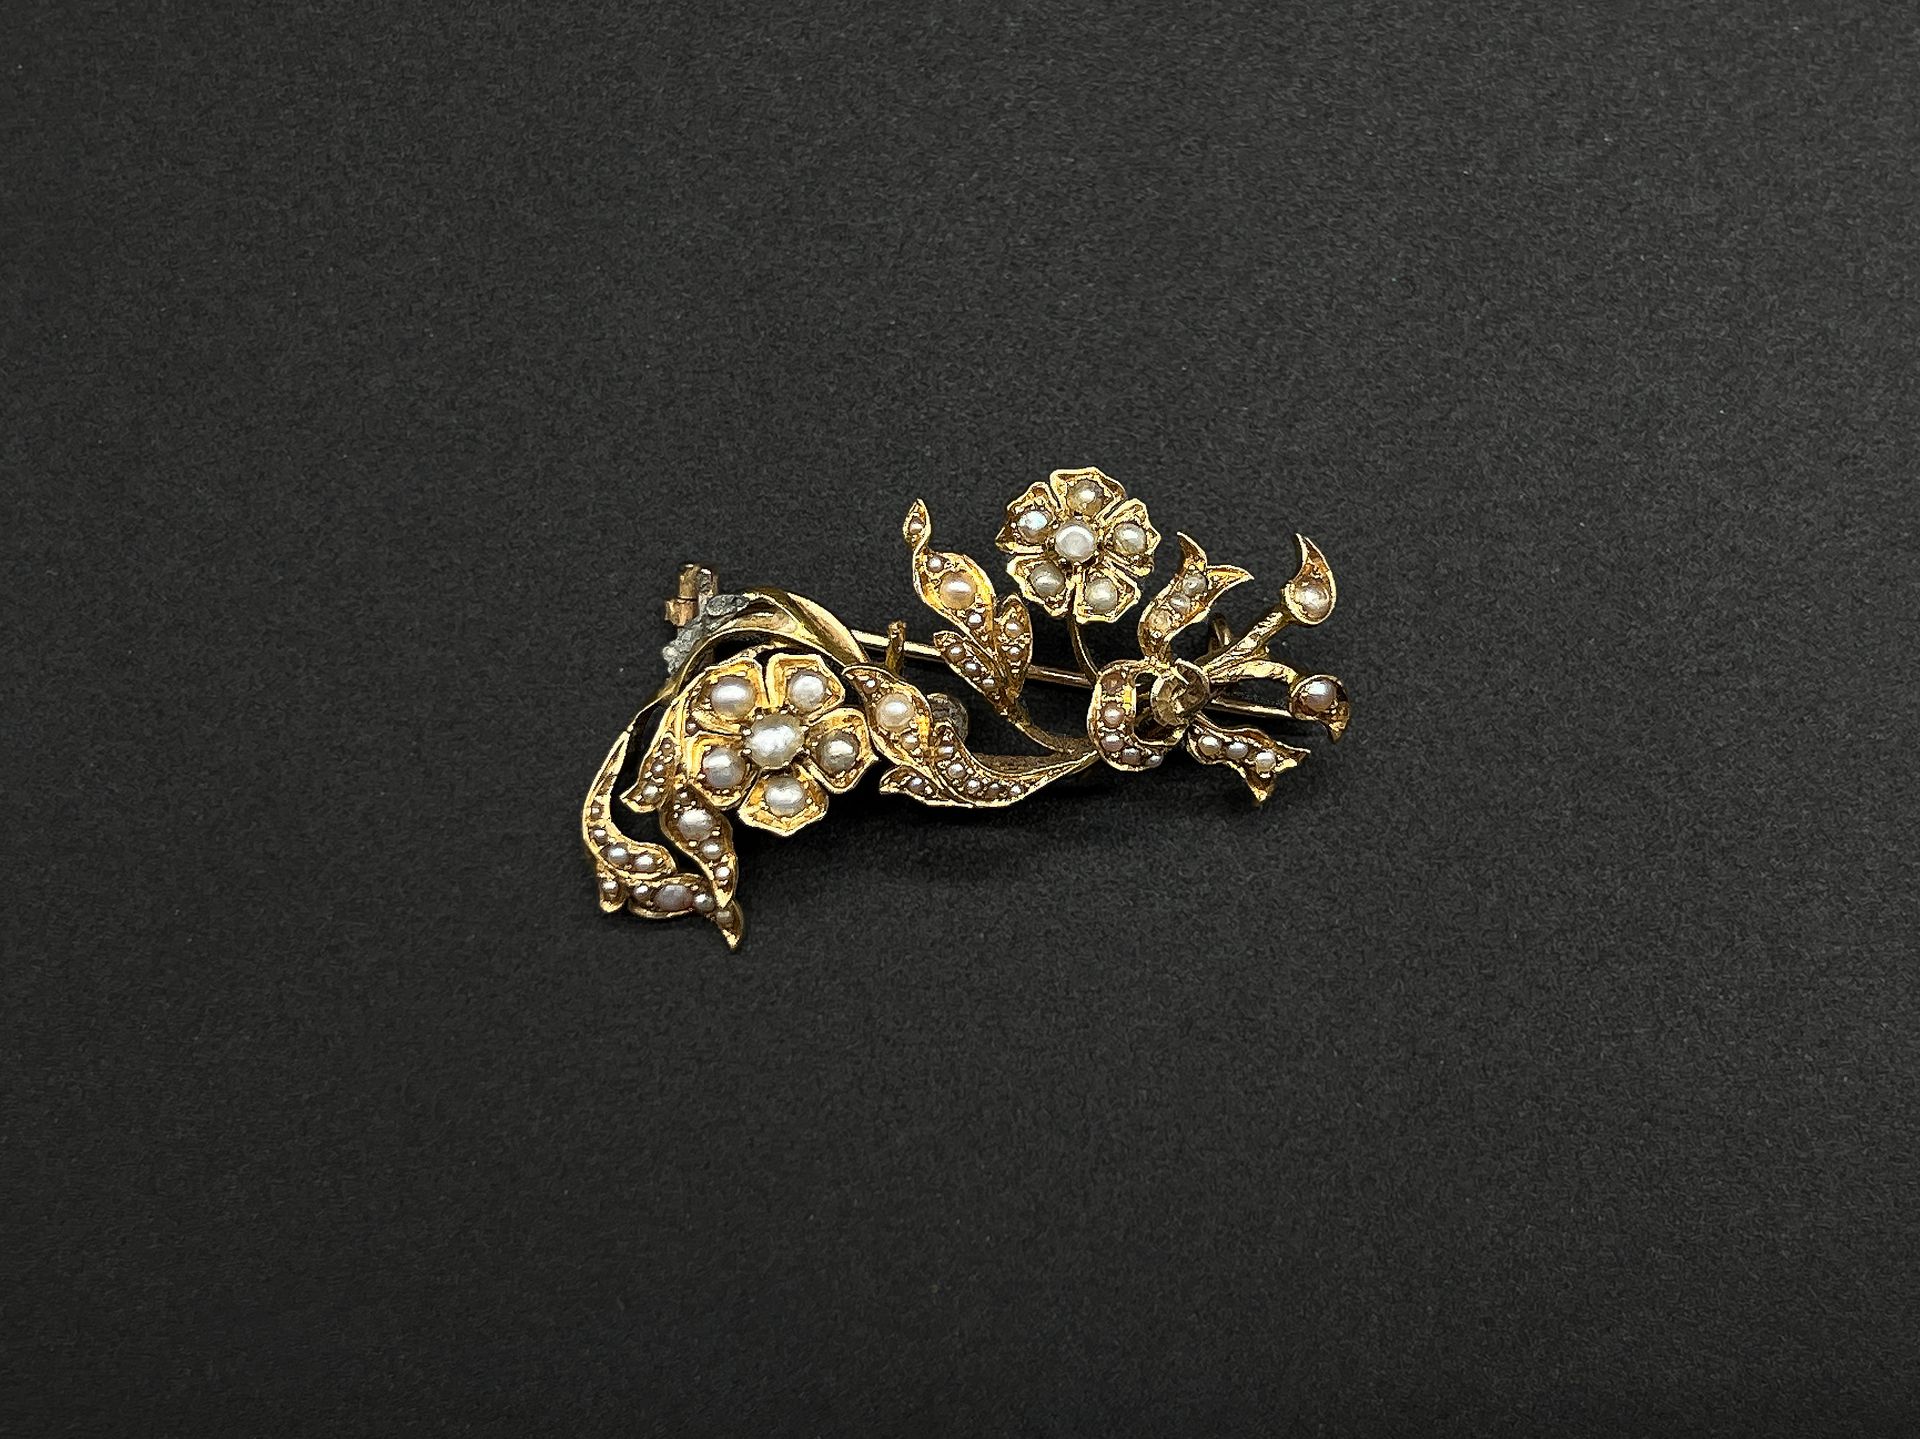 Null 黄金（750）胸针，以花束和带状蝴蝶结为特色，上面装饰着小养殖珍珠。

重量：6.1克。